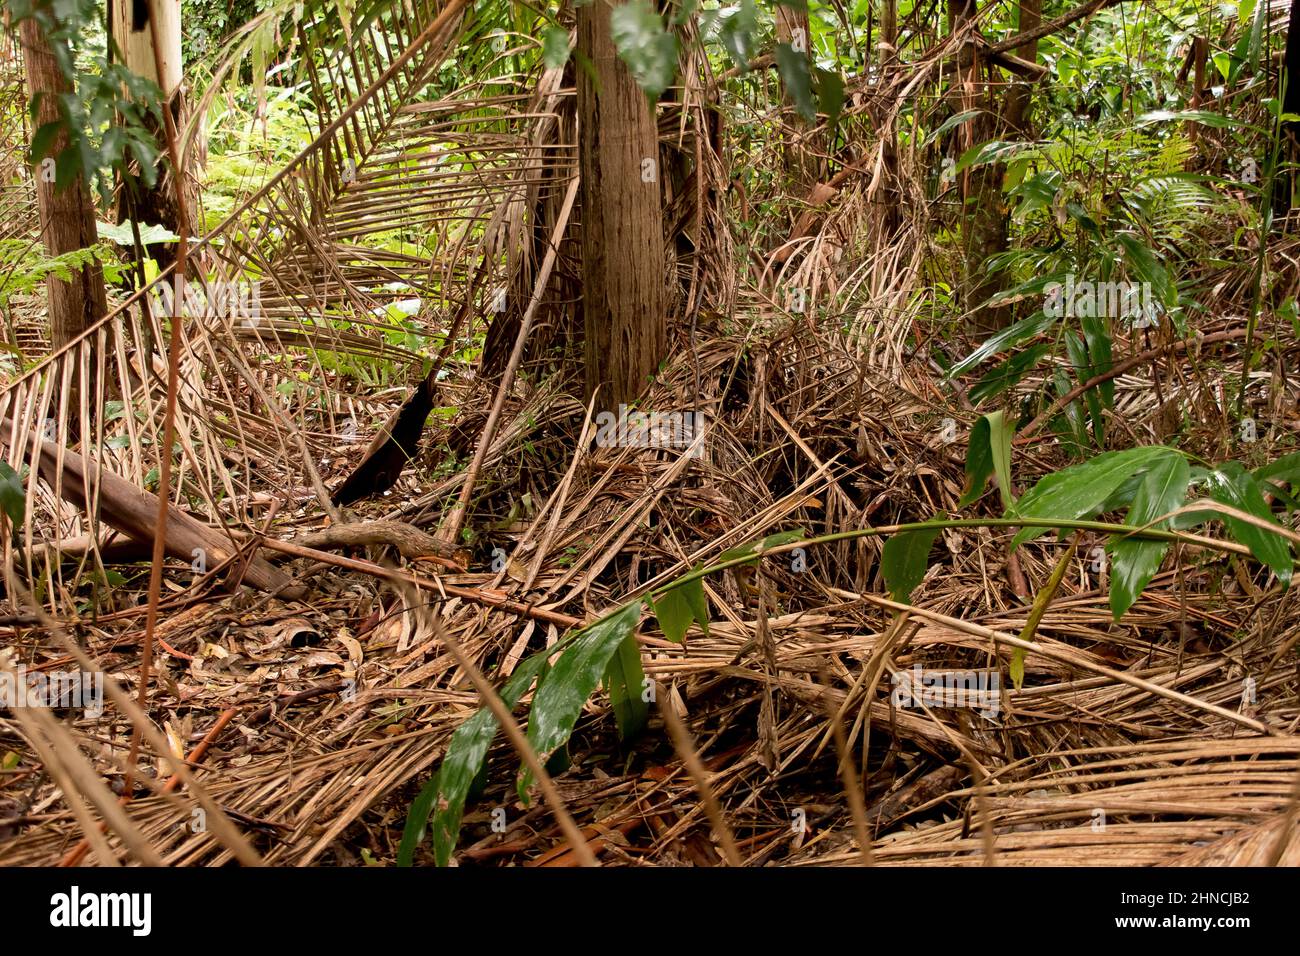 Selva tropical subtropical de tierras bajas. Piso bajo y bosque con frondas caidas después de la lluvia del verano. Tamborine Mountain, Queensland, Australia Foto de stock